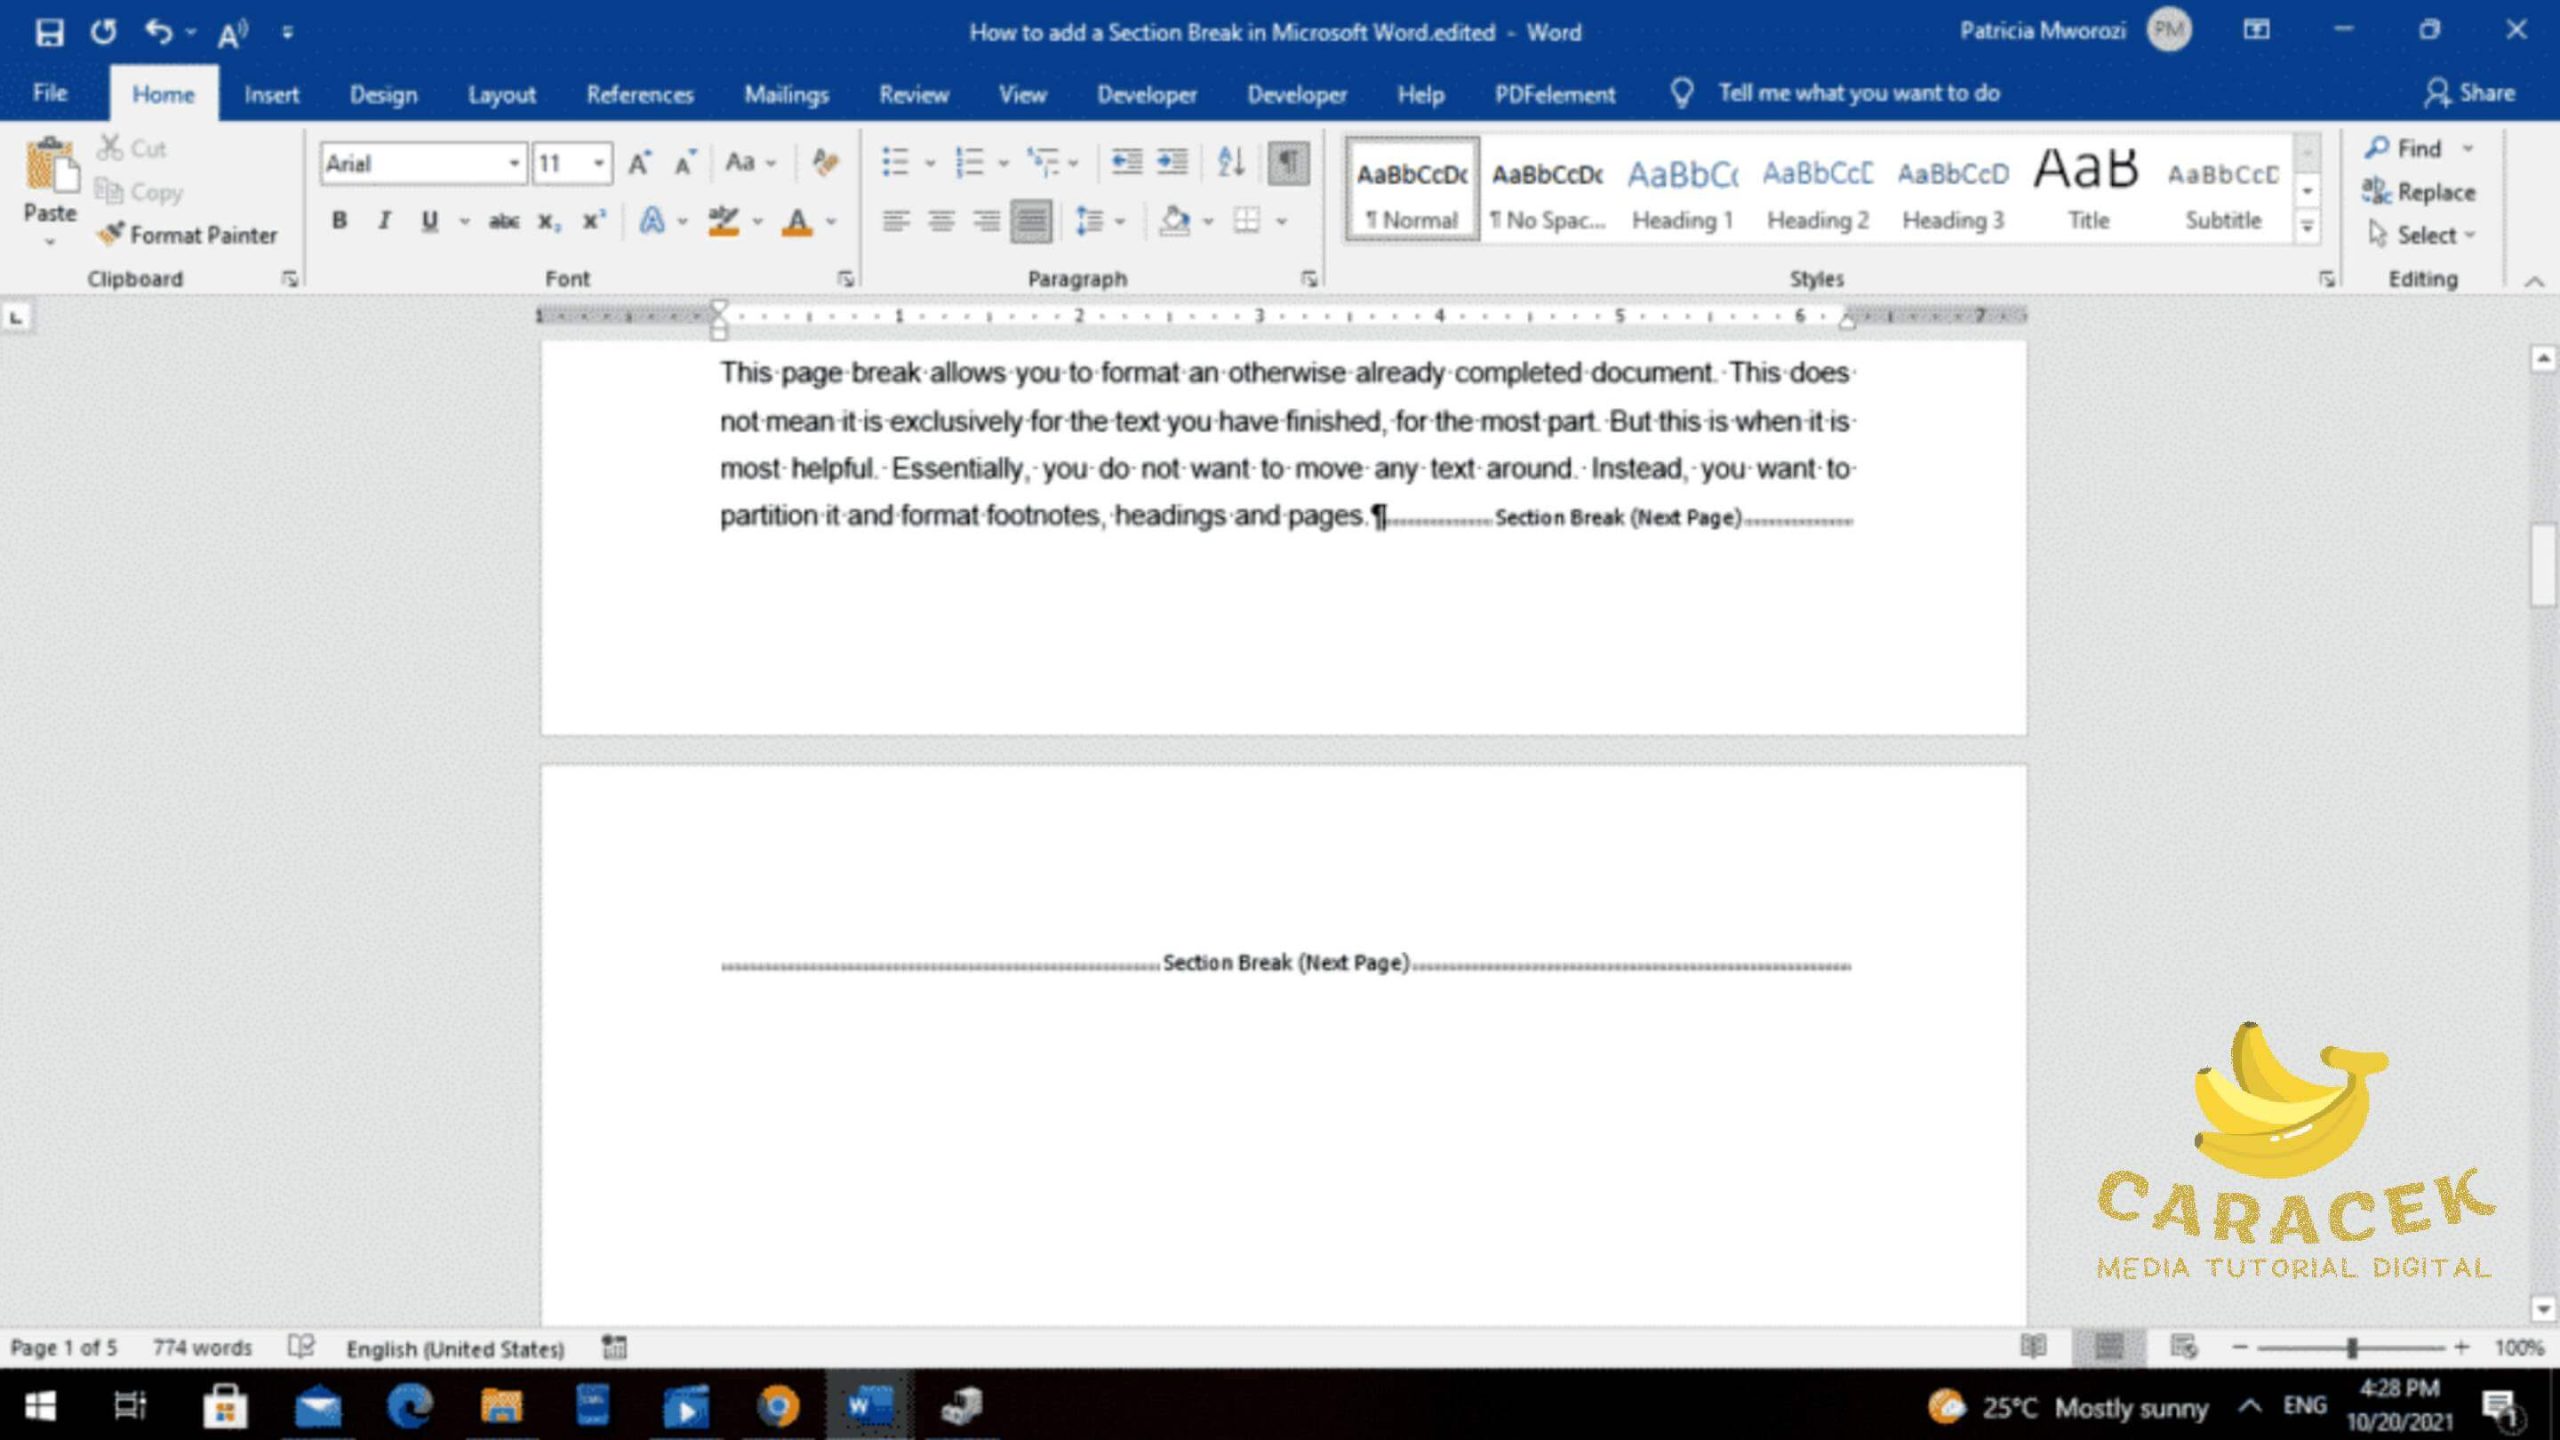 Cara Menghapus Halaman Kosong di Microsoft Word